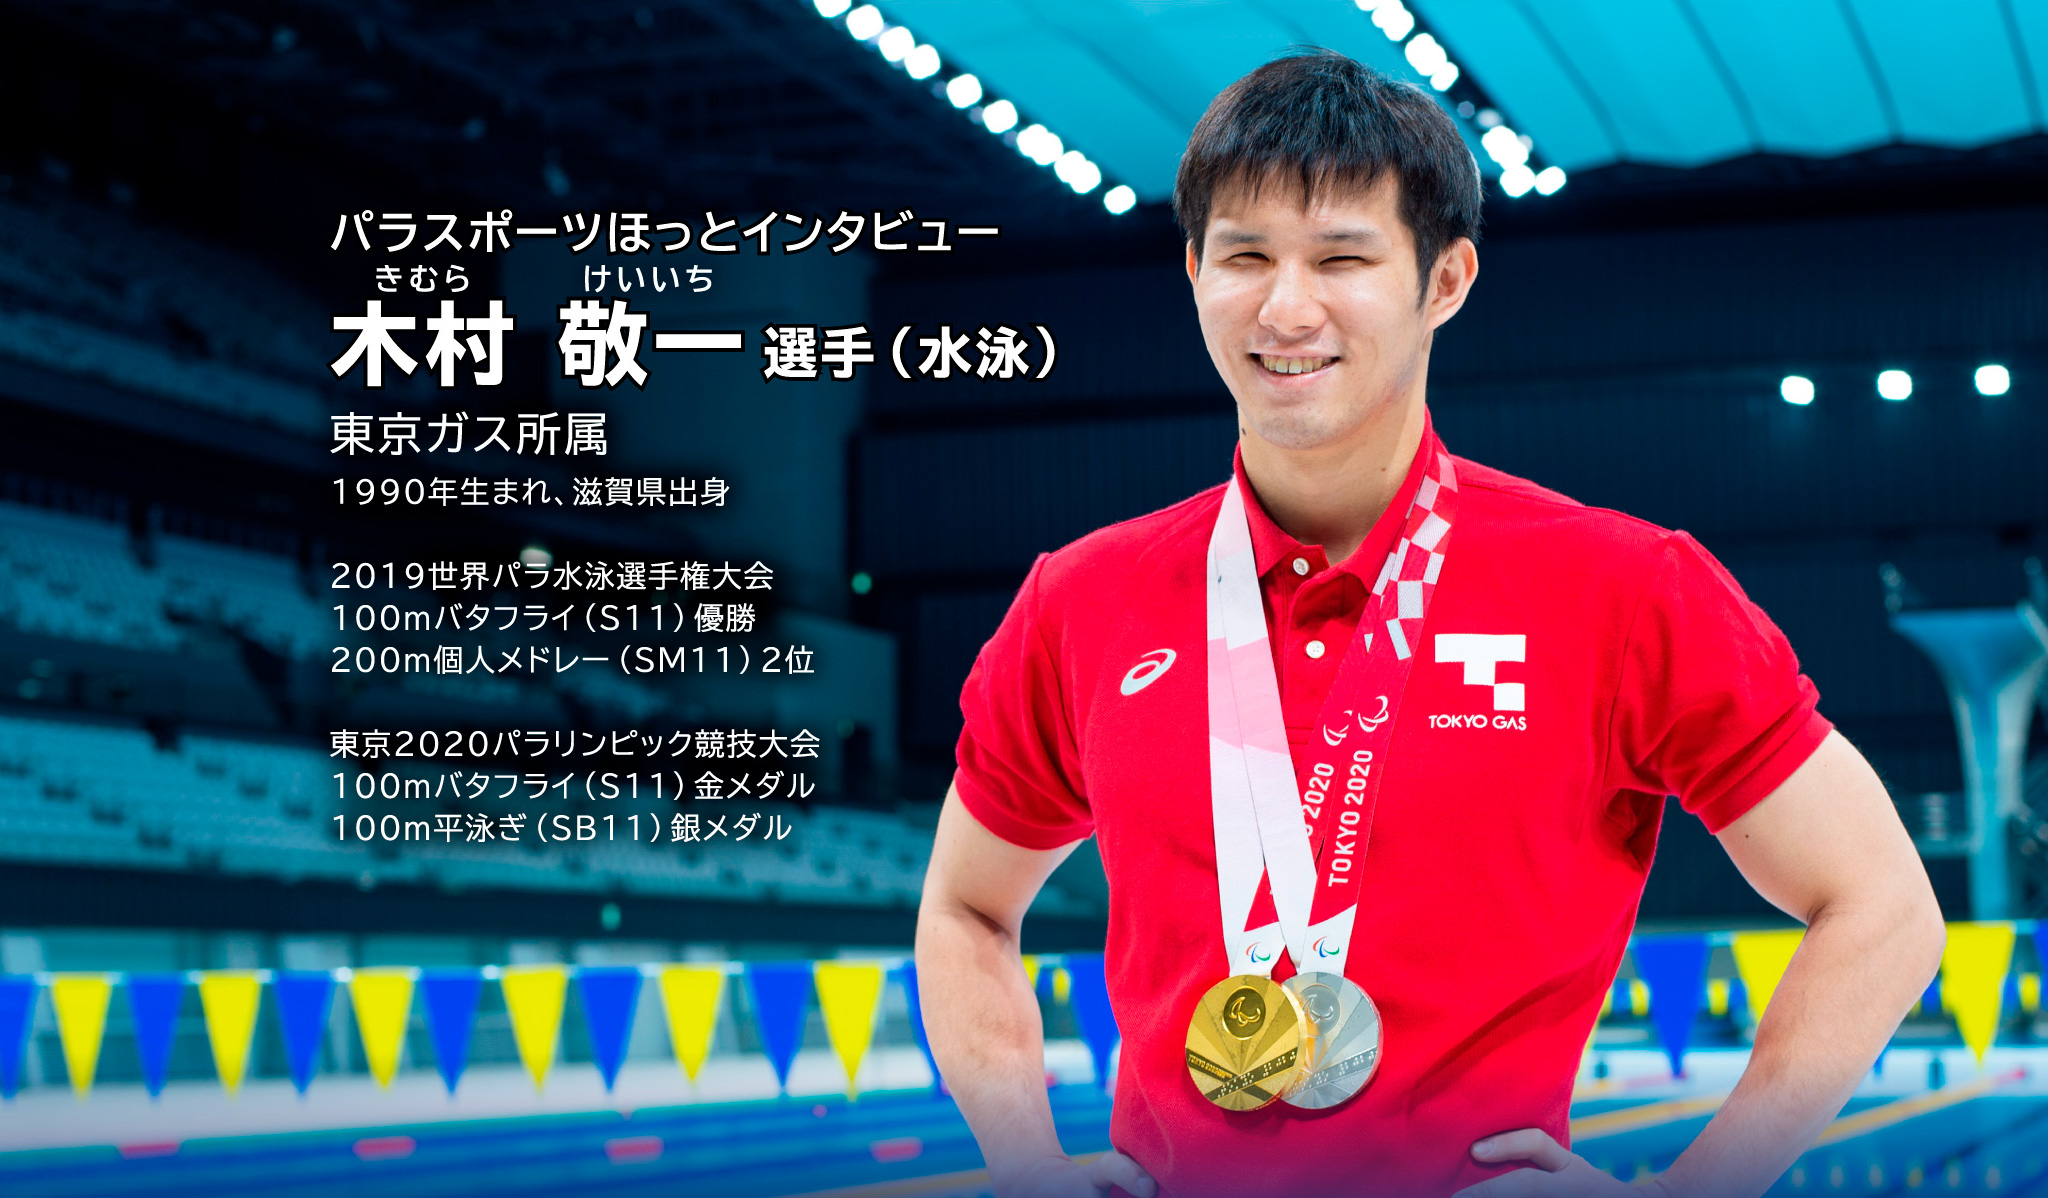 パラスポーツほっとインタビュー きむら けいいち選手（水泳） 東京ガス所属 1990年生まれ、滋賀県出身 2019世界パラ水泳選手権大会 100mバタフライ（S11）優勝　大会新記録 200m個人メドレー（SM11）2位 東京2020パラリンピック競技大会 100mバタフライ（S11）金メダル 100ｍ平泳ぎ（SB11）銀メタル